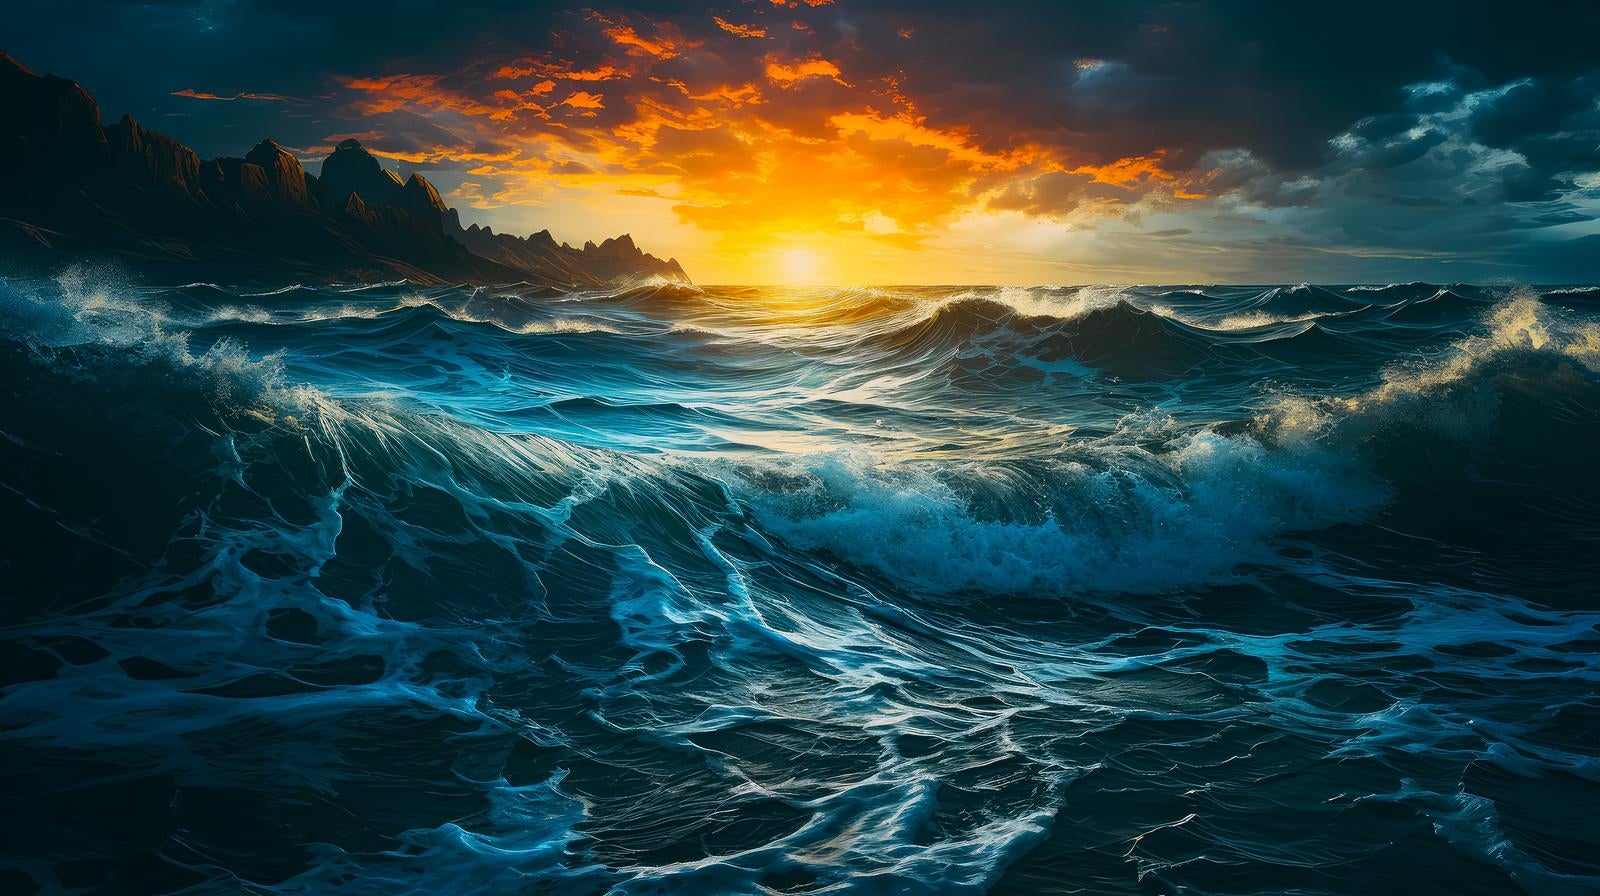 「日没の大波が描く壮絶な美しさ」の写真